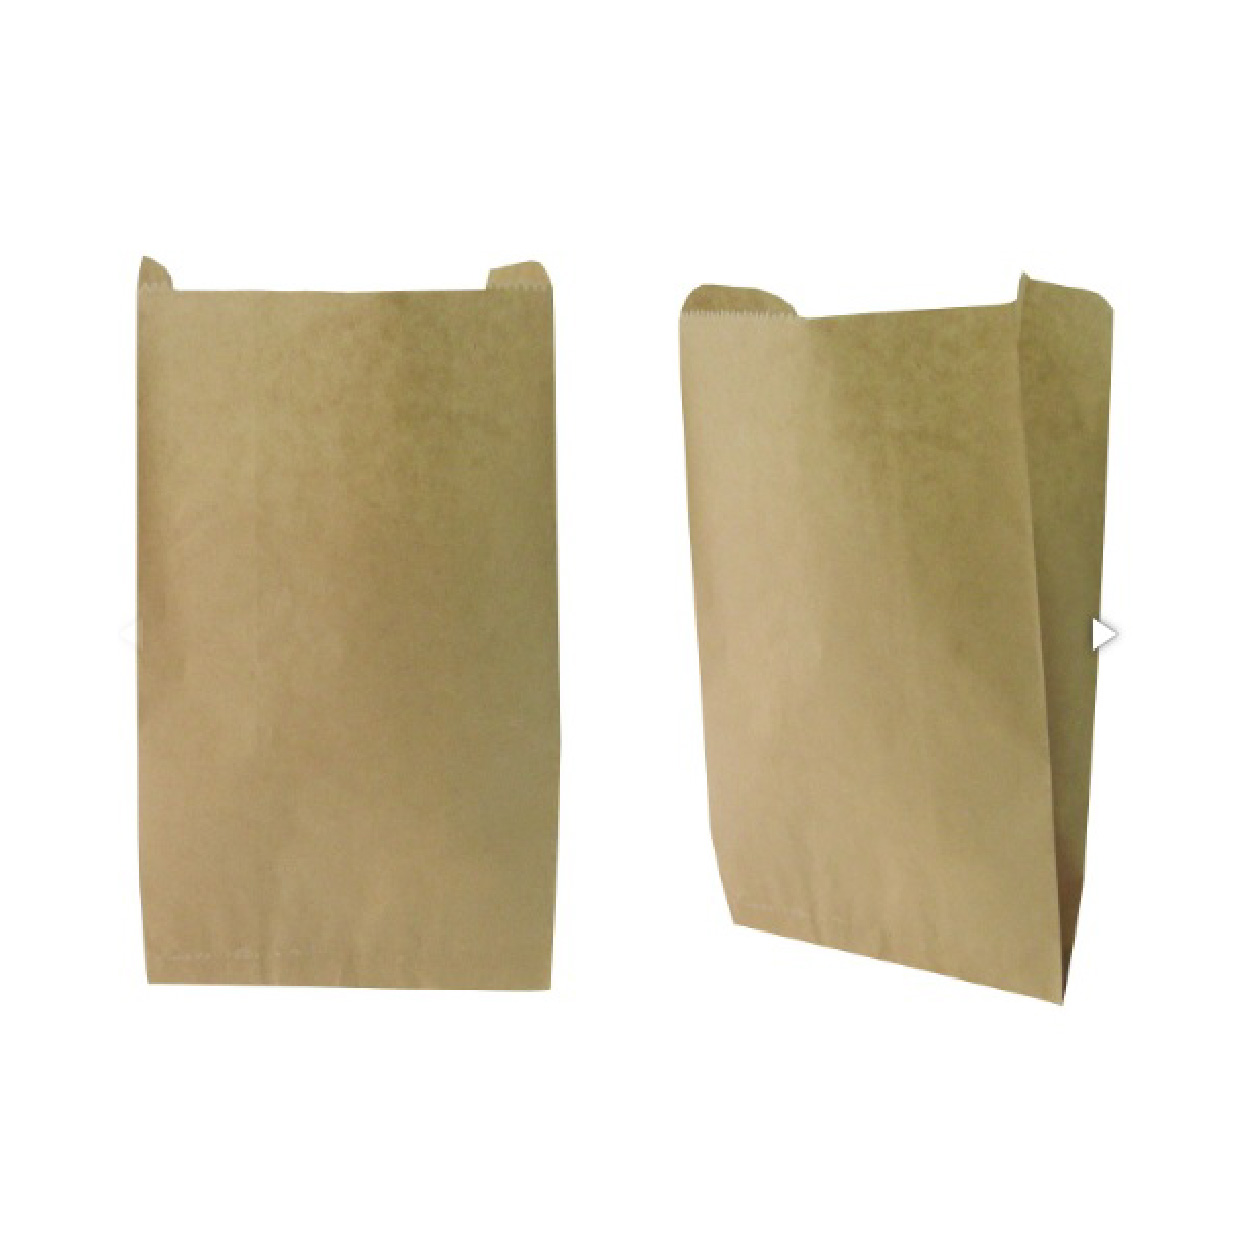 ถุงซองกระดาษขยายข้าง 50 แกรม สีน้ำตาล ขนาด 16x28(+9) cm. (20 ใบ/แพ็ค)